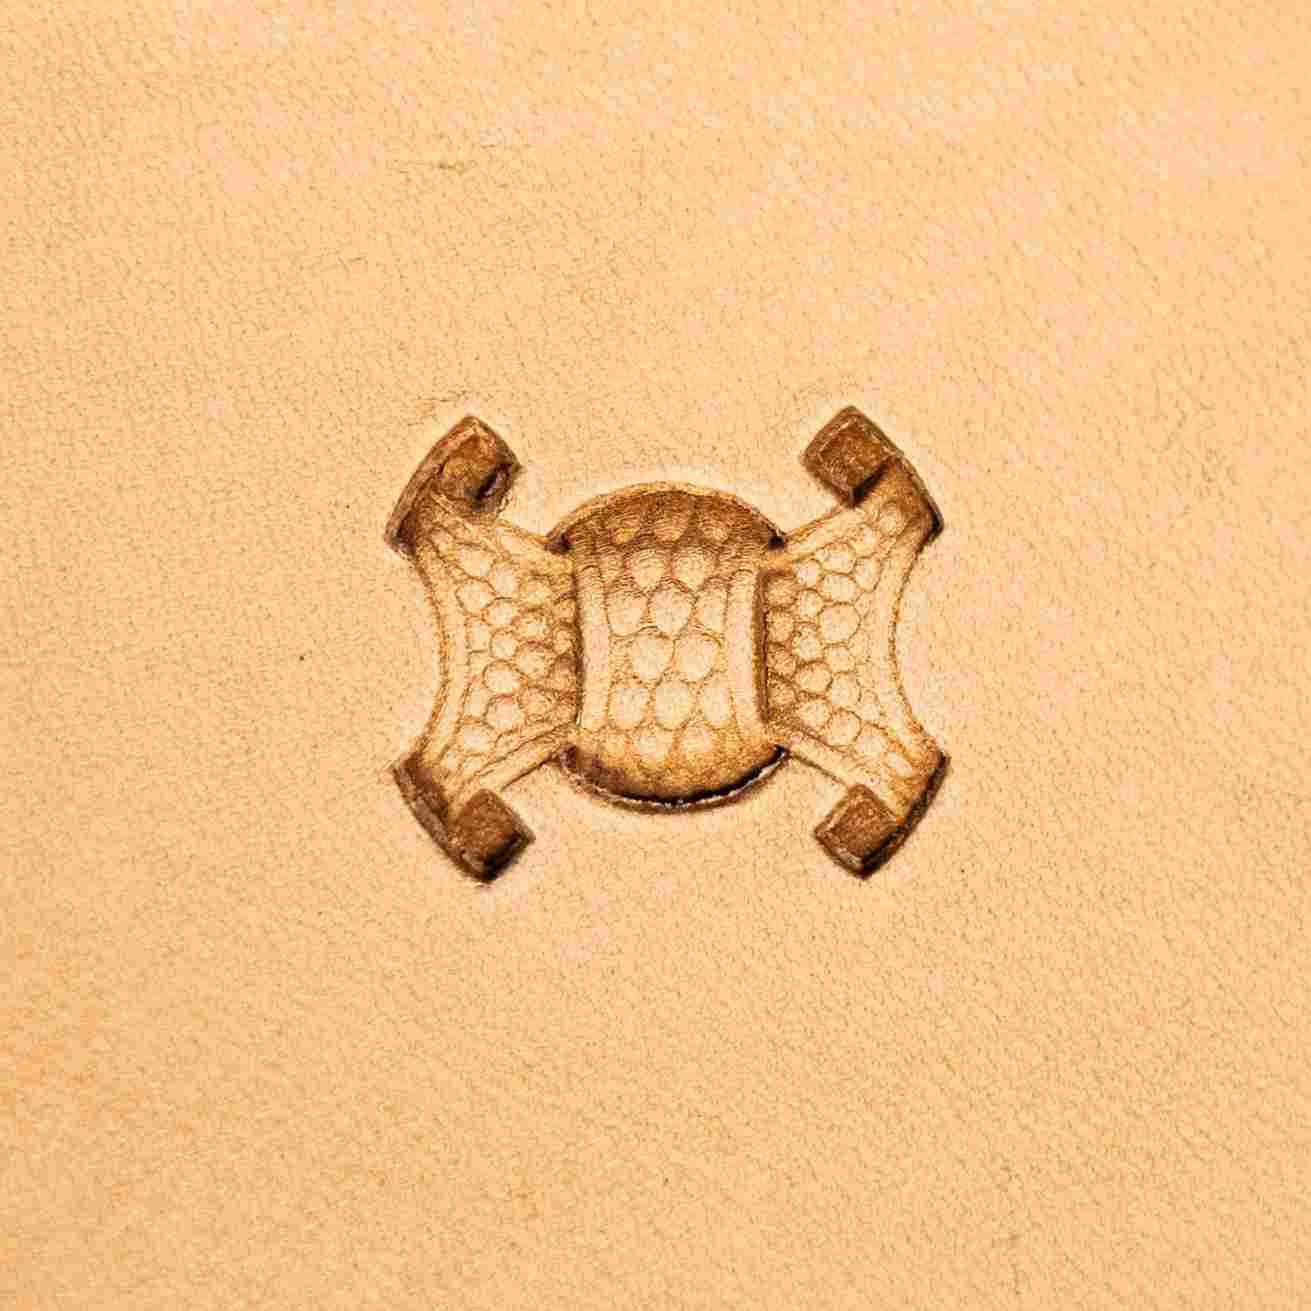 Basket Weave Leather Stamping Tool single imprint design LT001